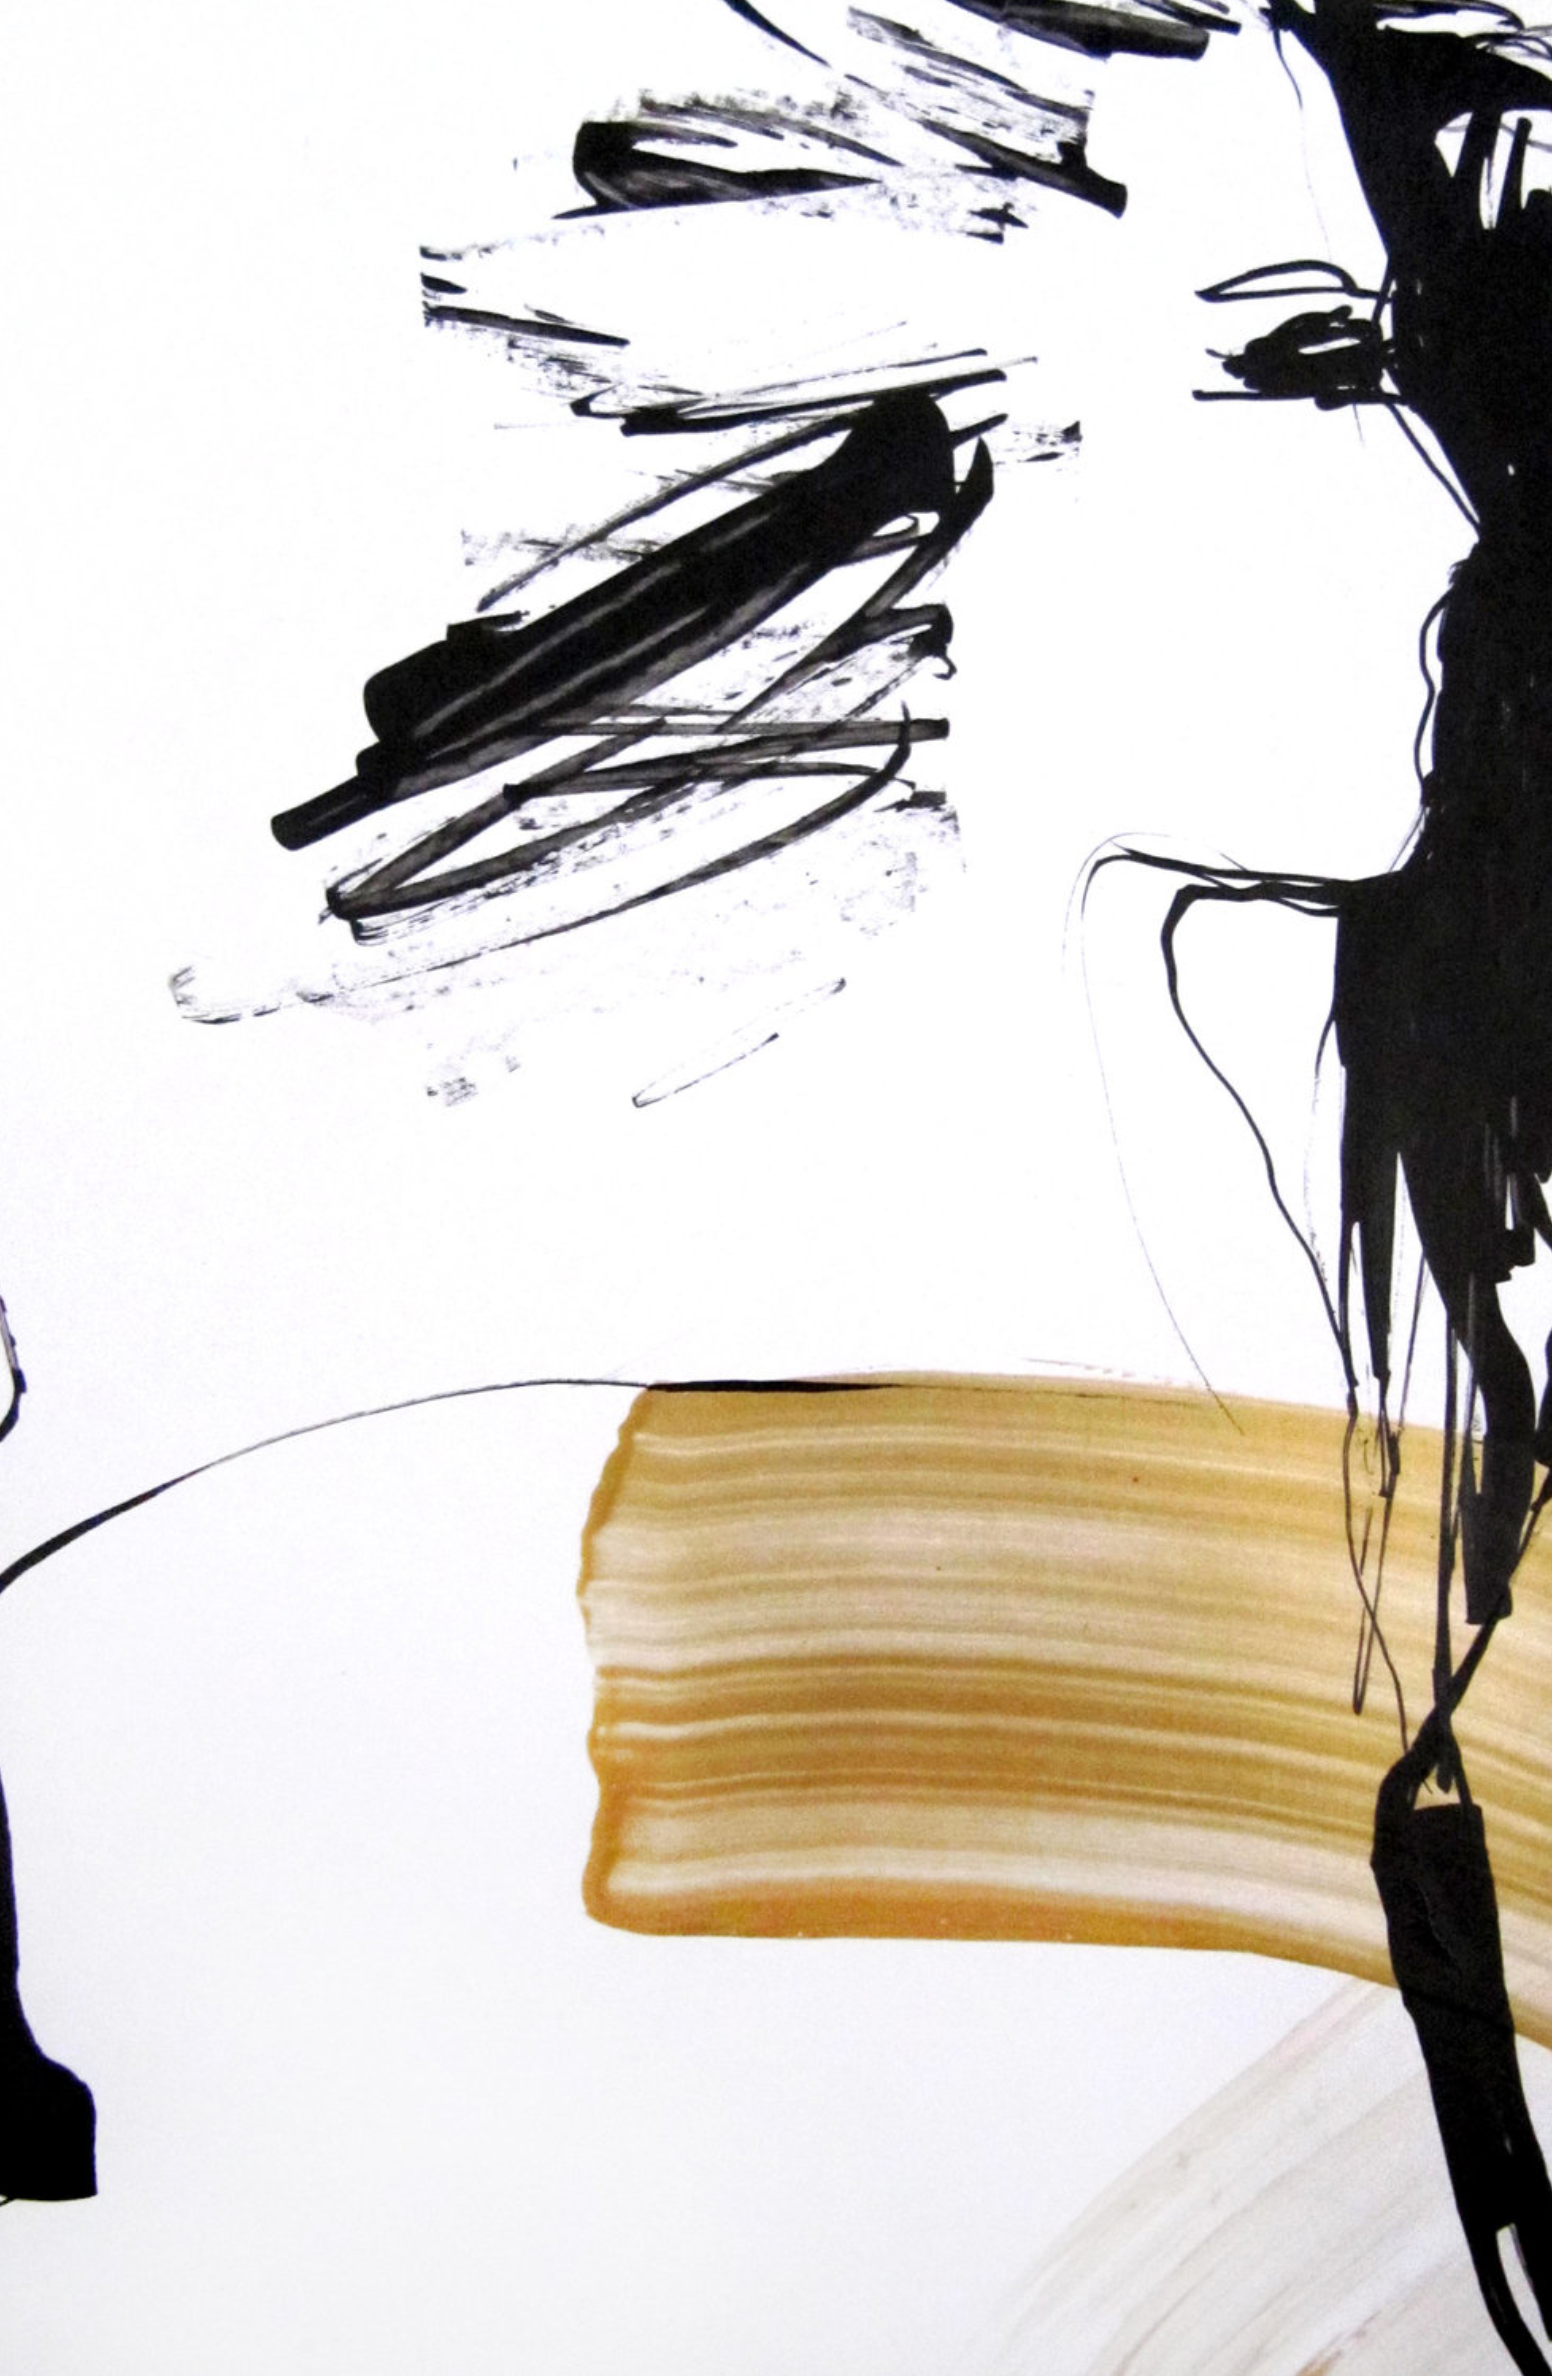 El "Visionnaire" de Sylvia Baldeva muestra una acuarela pintada de forma semi-abstracta. Perfil femenino, escena de vida, retrato. Tinta negra y pintura dorada sobre papel